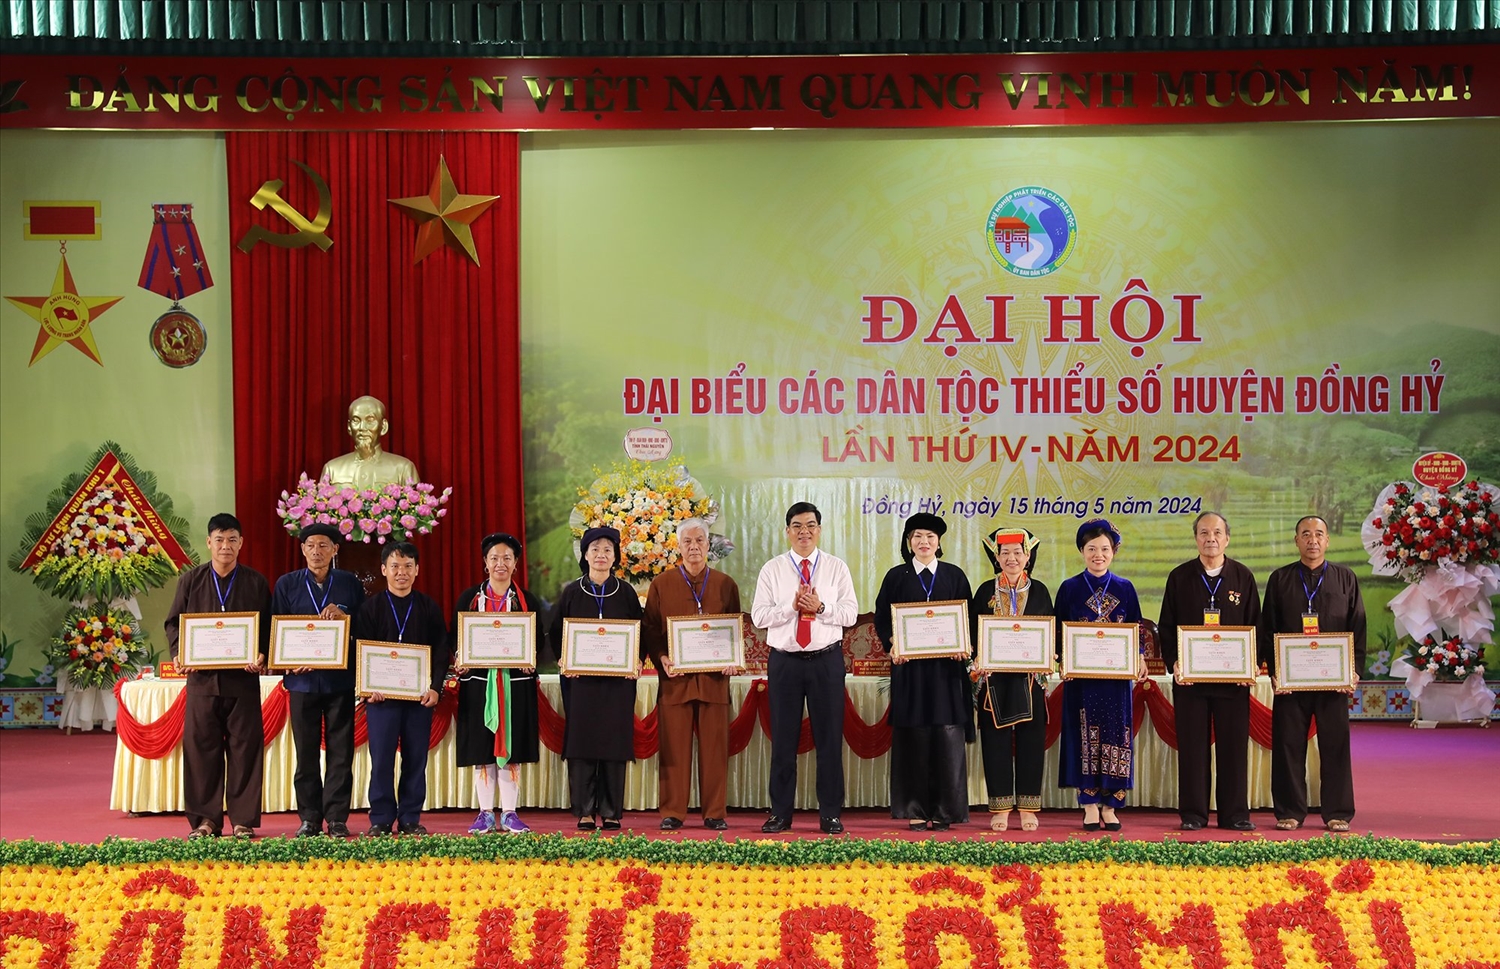 Các đại biểu tham dự Đại hội Đại biểu DTTS huyện Đồng Hỷ nhận Quyết định khen thưởng vì đã có thành tích trong thực hiện công tác dân tộc, chính sách dân tộc giai đoạn 2019-2024